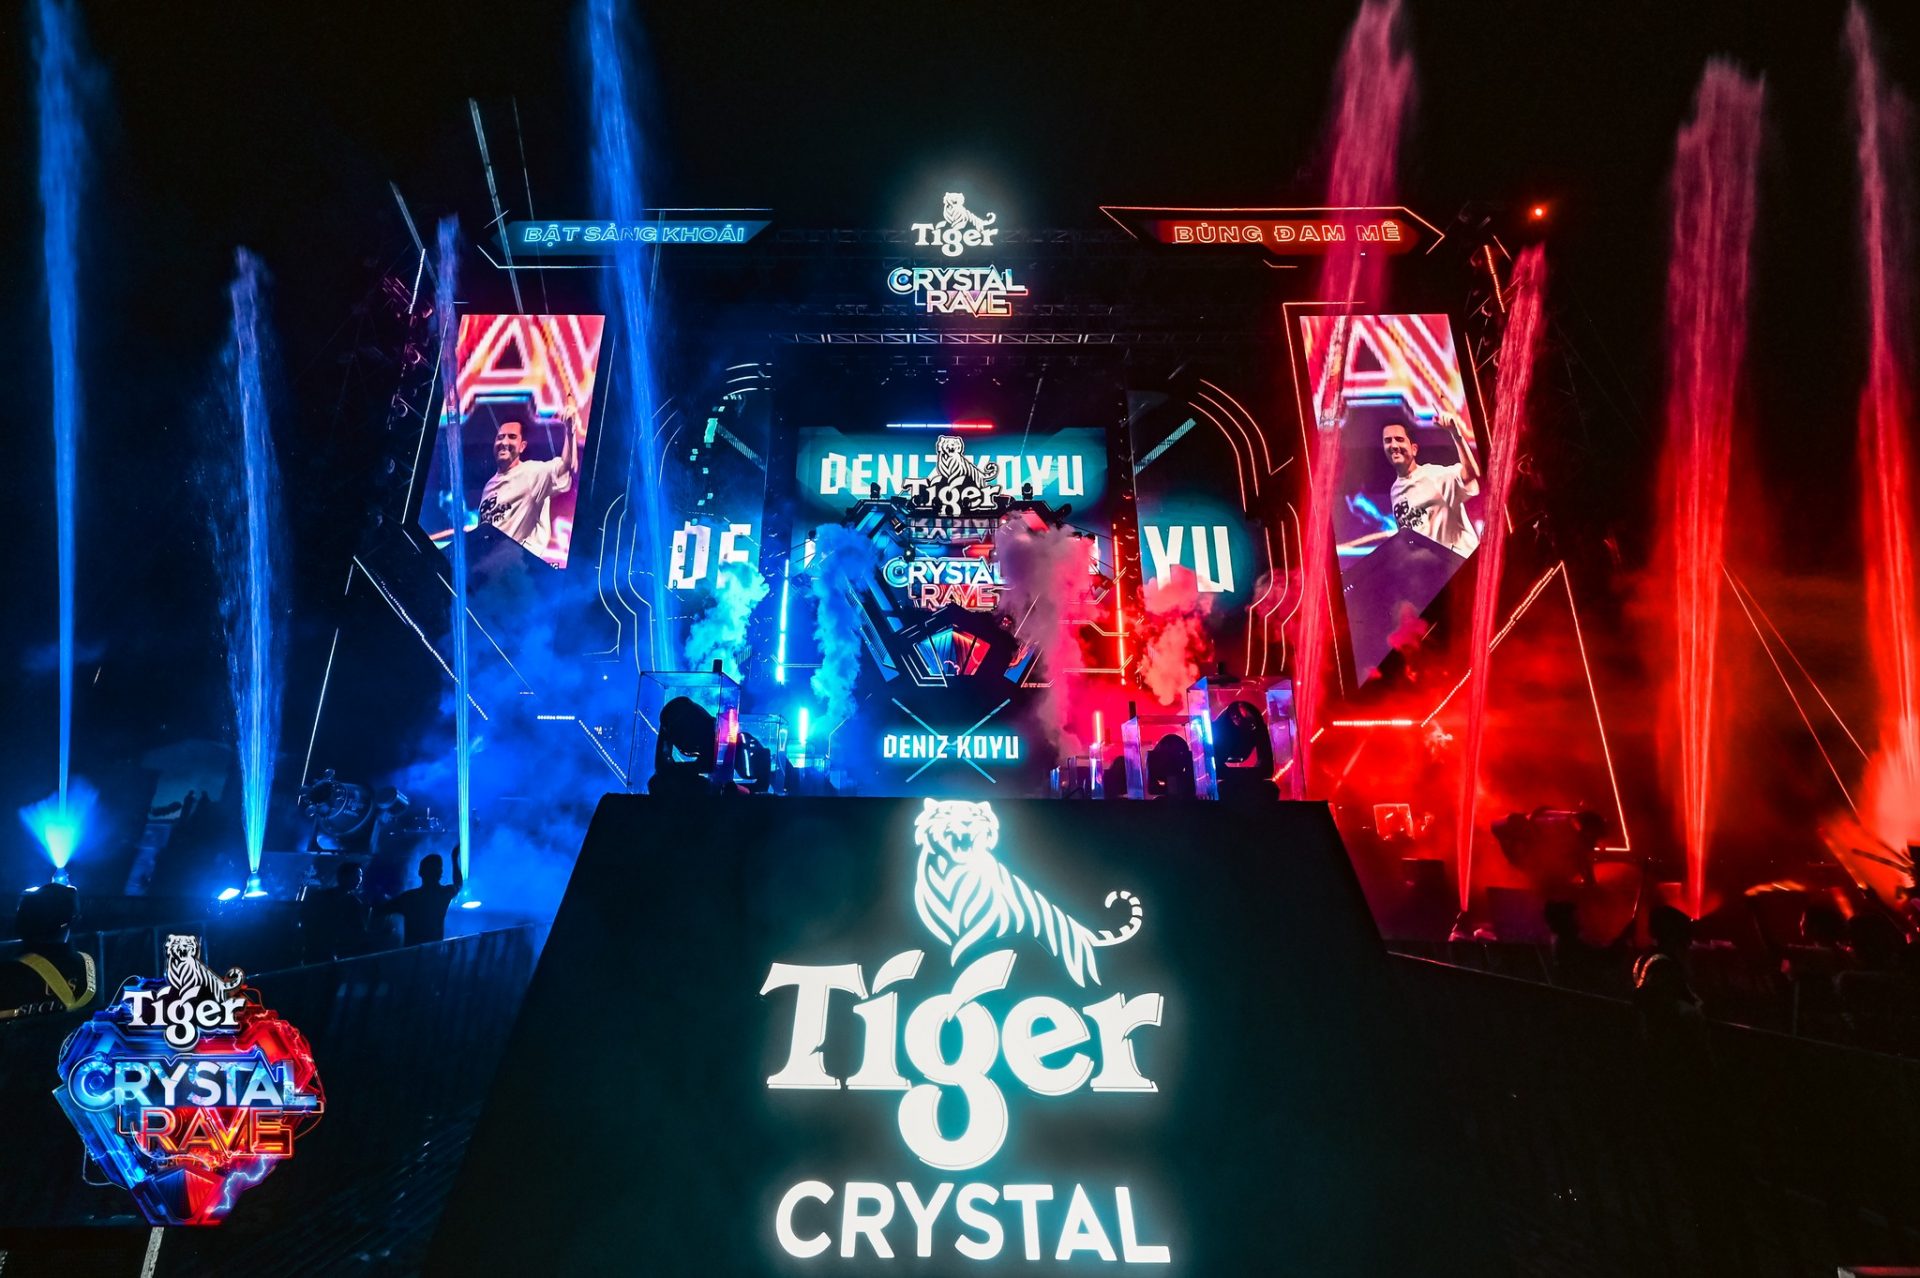 Đại hội nhạc nước Tiger Đà Nẵng - Tiếp Nối Sự Thành Công: Tiger Crystal Rave 2.0 tại Vũng Tàu